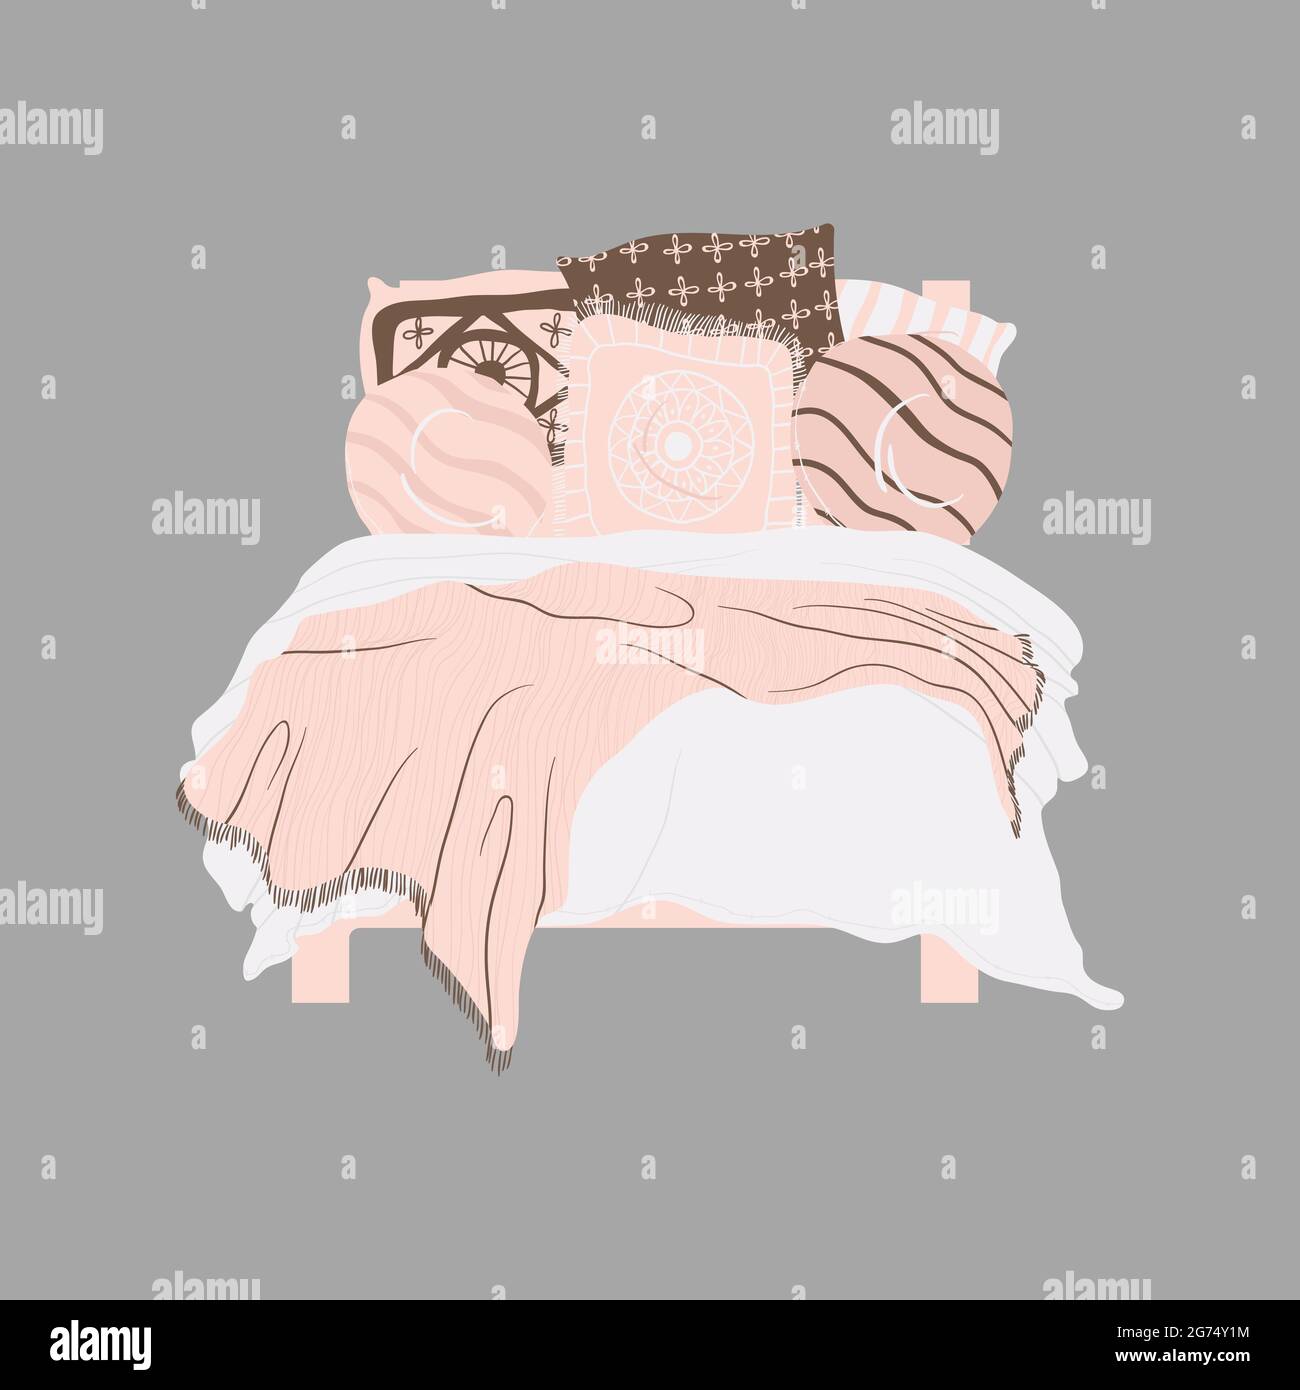 Doppelbett mit blanken und dekorativen Kissen in beigefarbenen Farben. Clip-Art im Cartoon-Stil. Einzelnes Objekt auf grauem Hintergrund isoliert. Gemütliches Schlafzimmer Stock Vektor